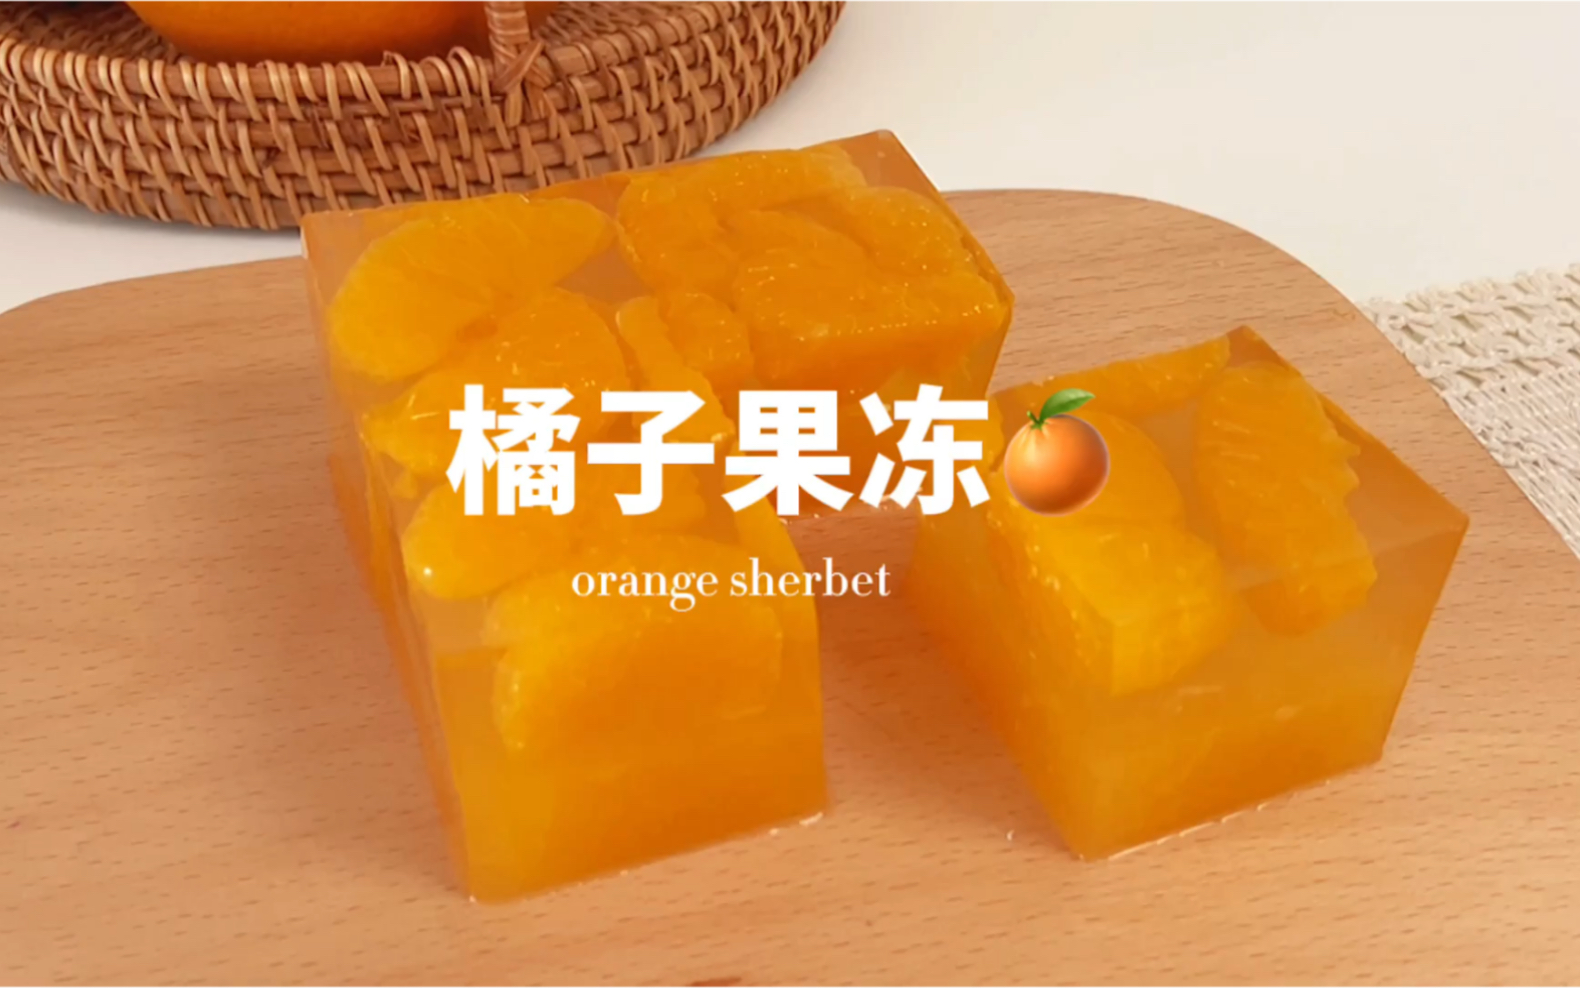 燕@烘焙屋: 橘子果冻 Mandarin Orange Konnyaku Jelly